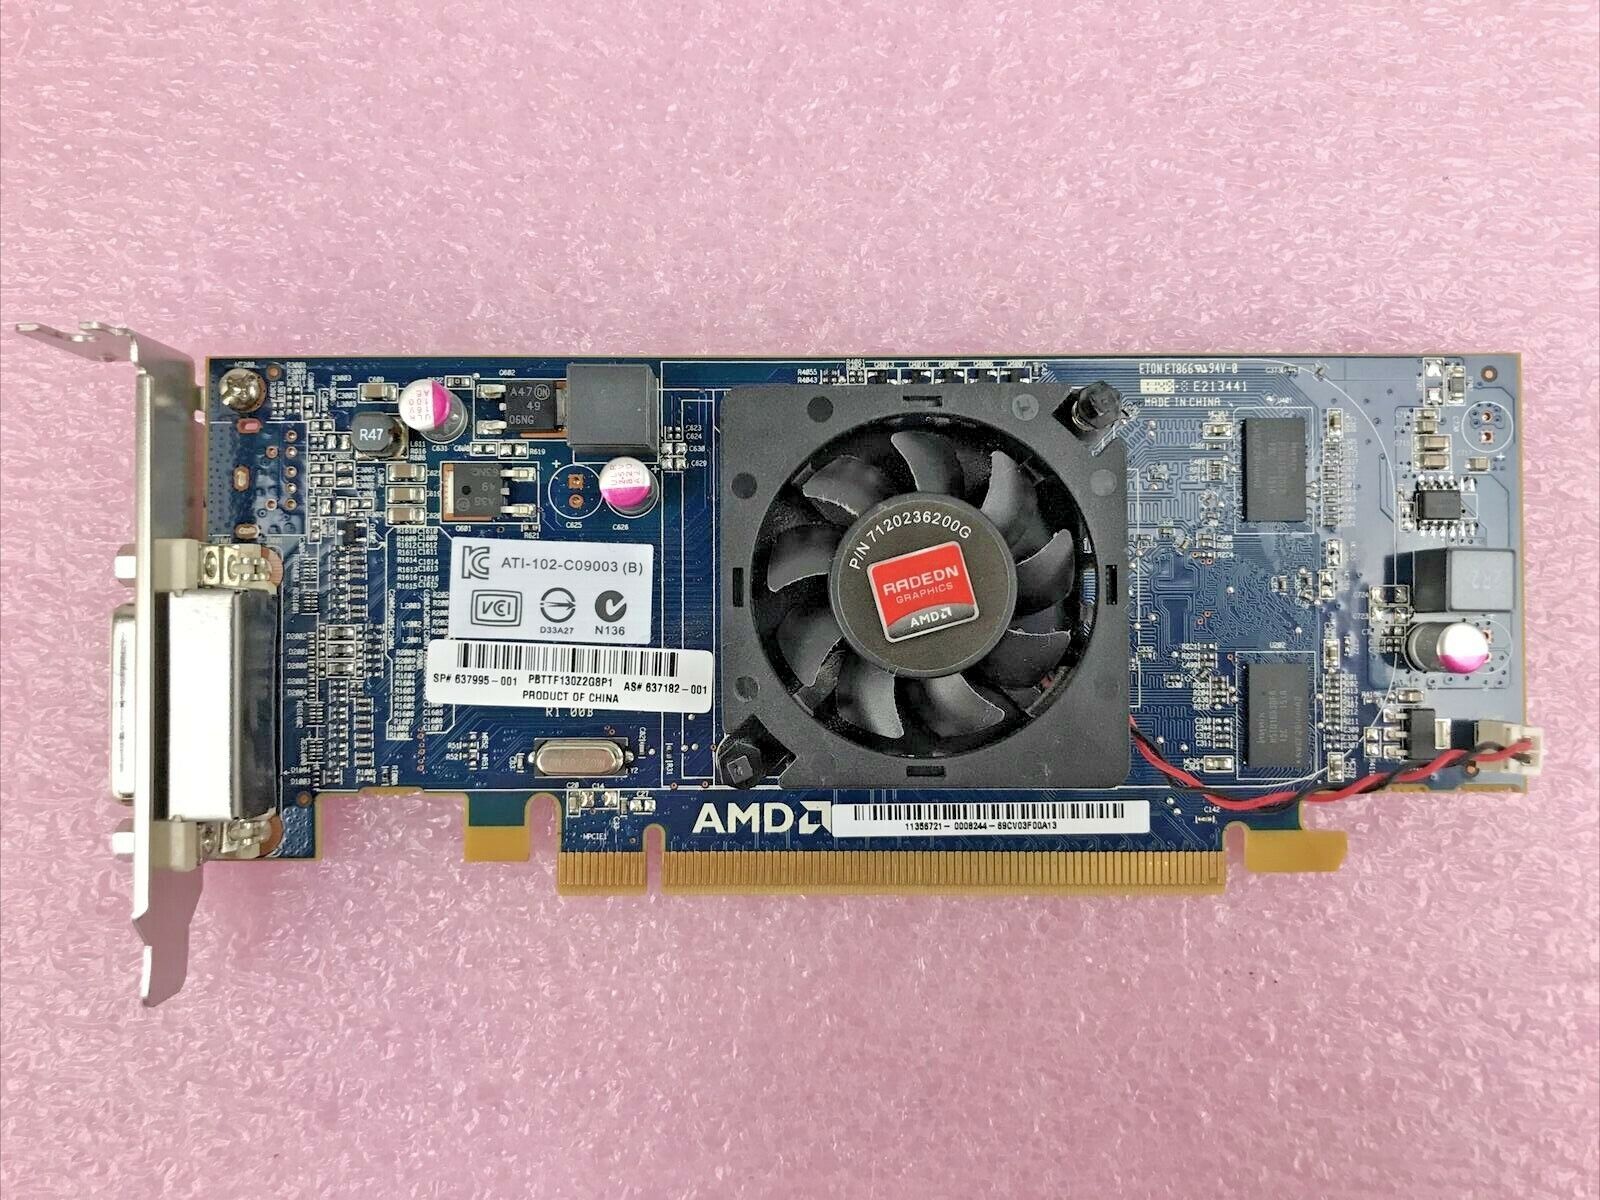 AMD Radeon ATI-102-C09003 (B) 512MB  PCI Express Video Card Low Profile